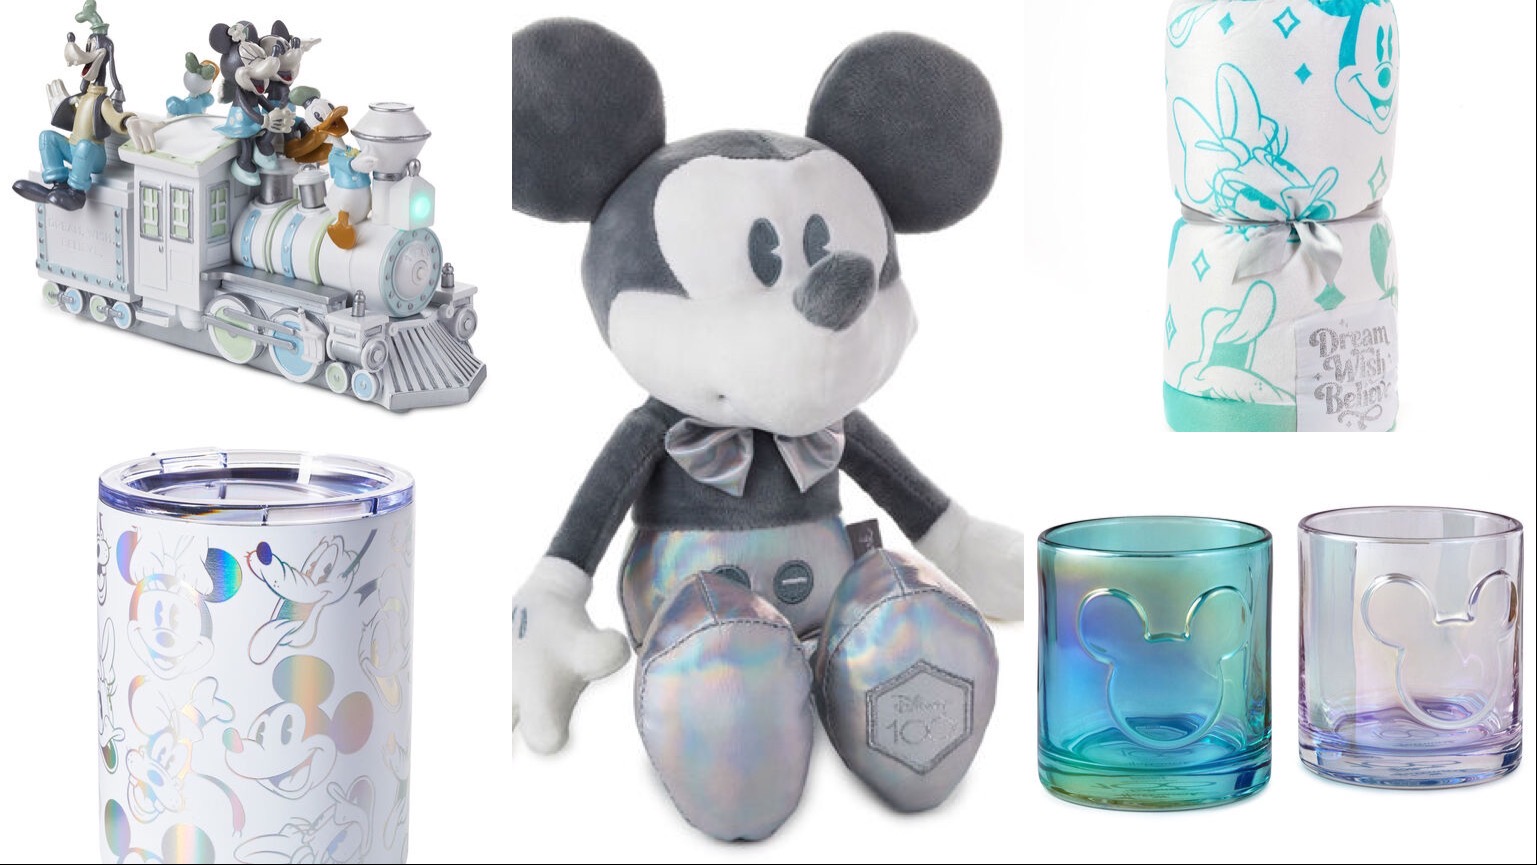 New Disney100 Merchandise Collection At Hallmark!